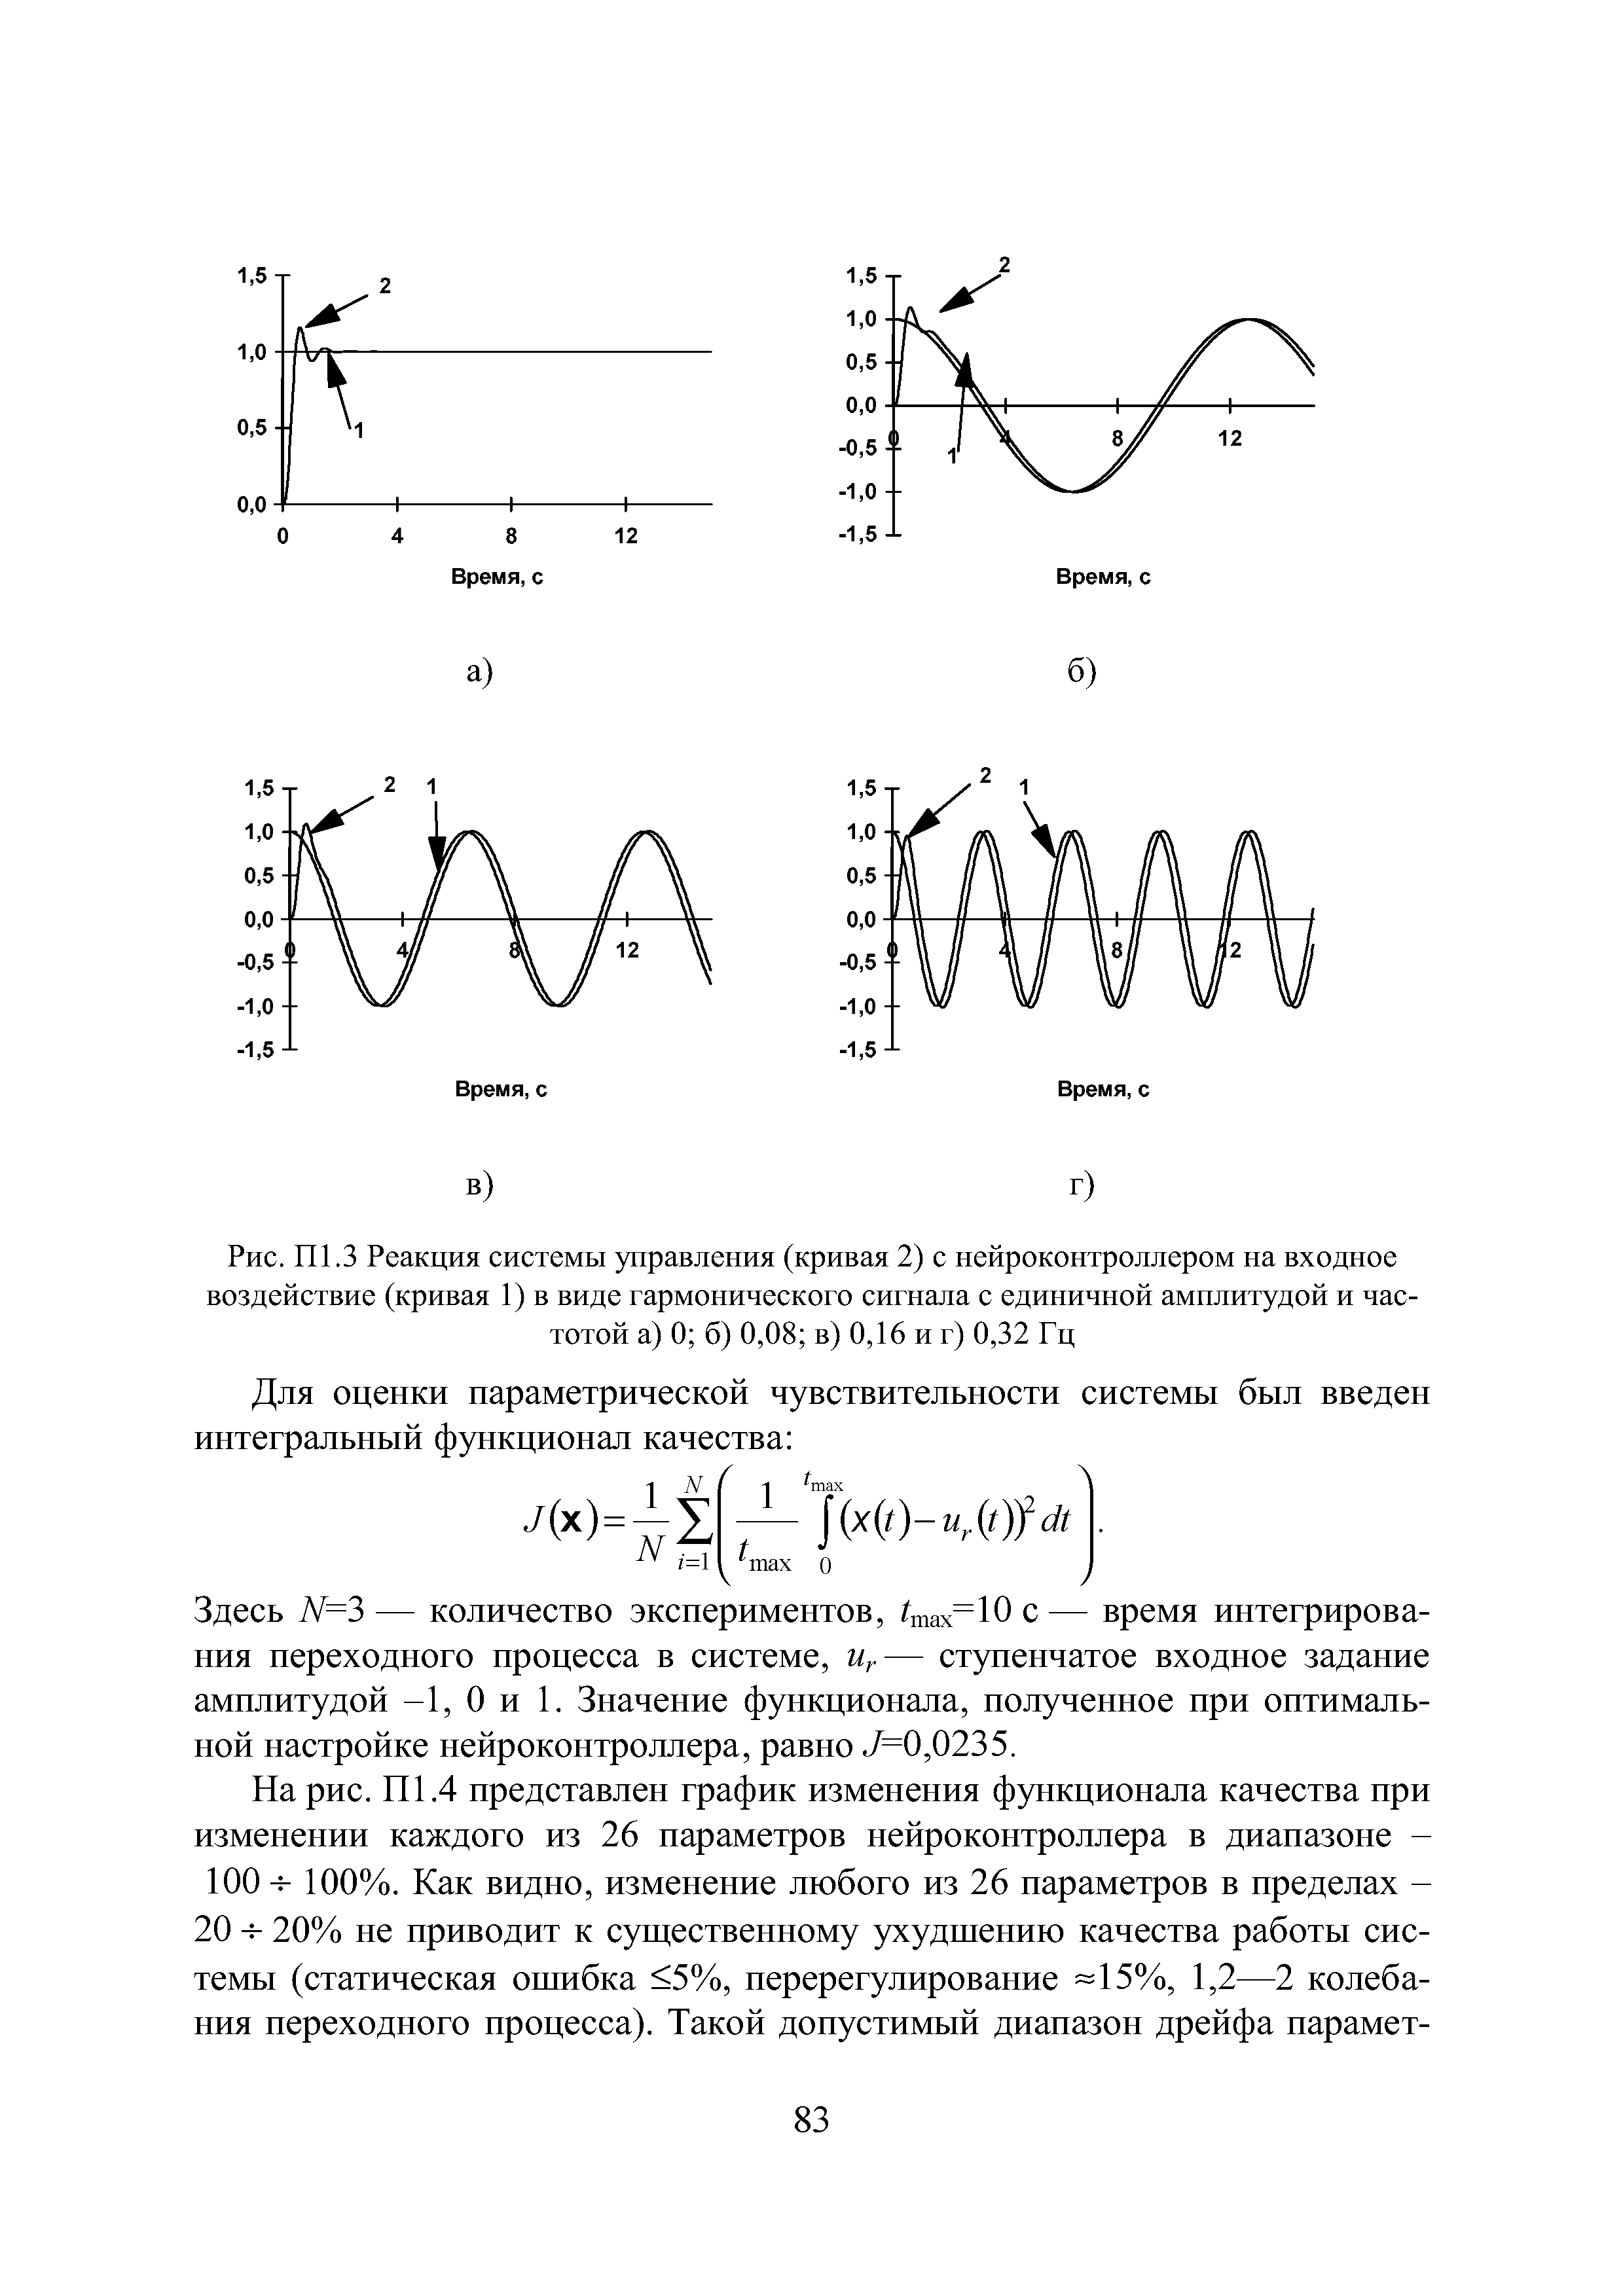 Рис. П1.3 Реакция системы управления (кривая 2) с нейроконтроллером на входное воздействие (кривая 1) в виде гармонического сигнала с единичной амплитудой и частотой а) 0 б) 0,08 в) 0,16 и г) 0,32 Гц...